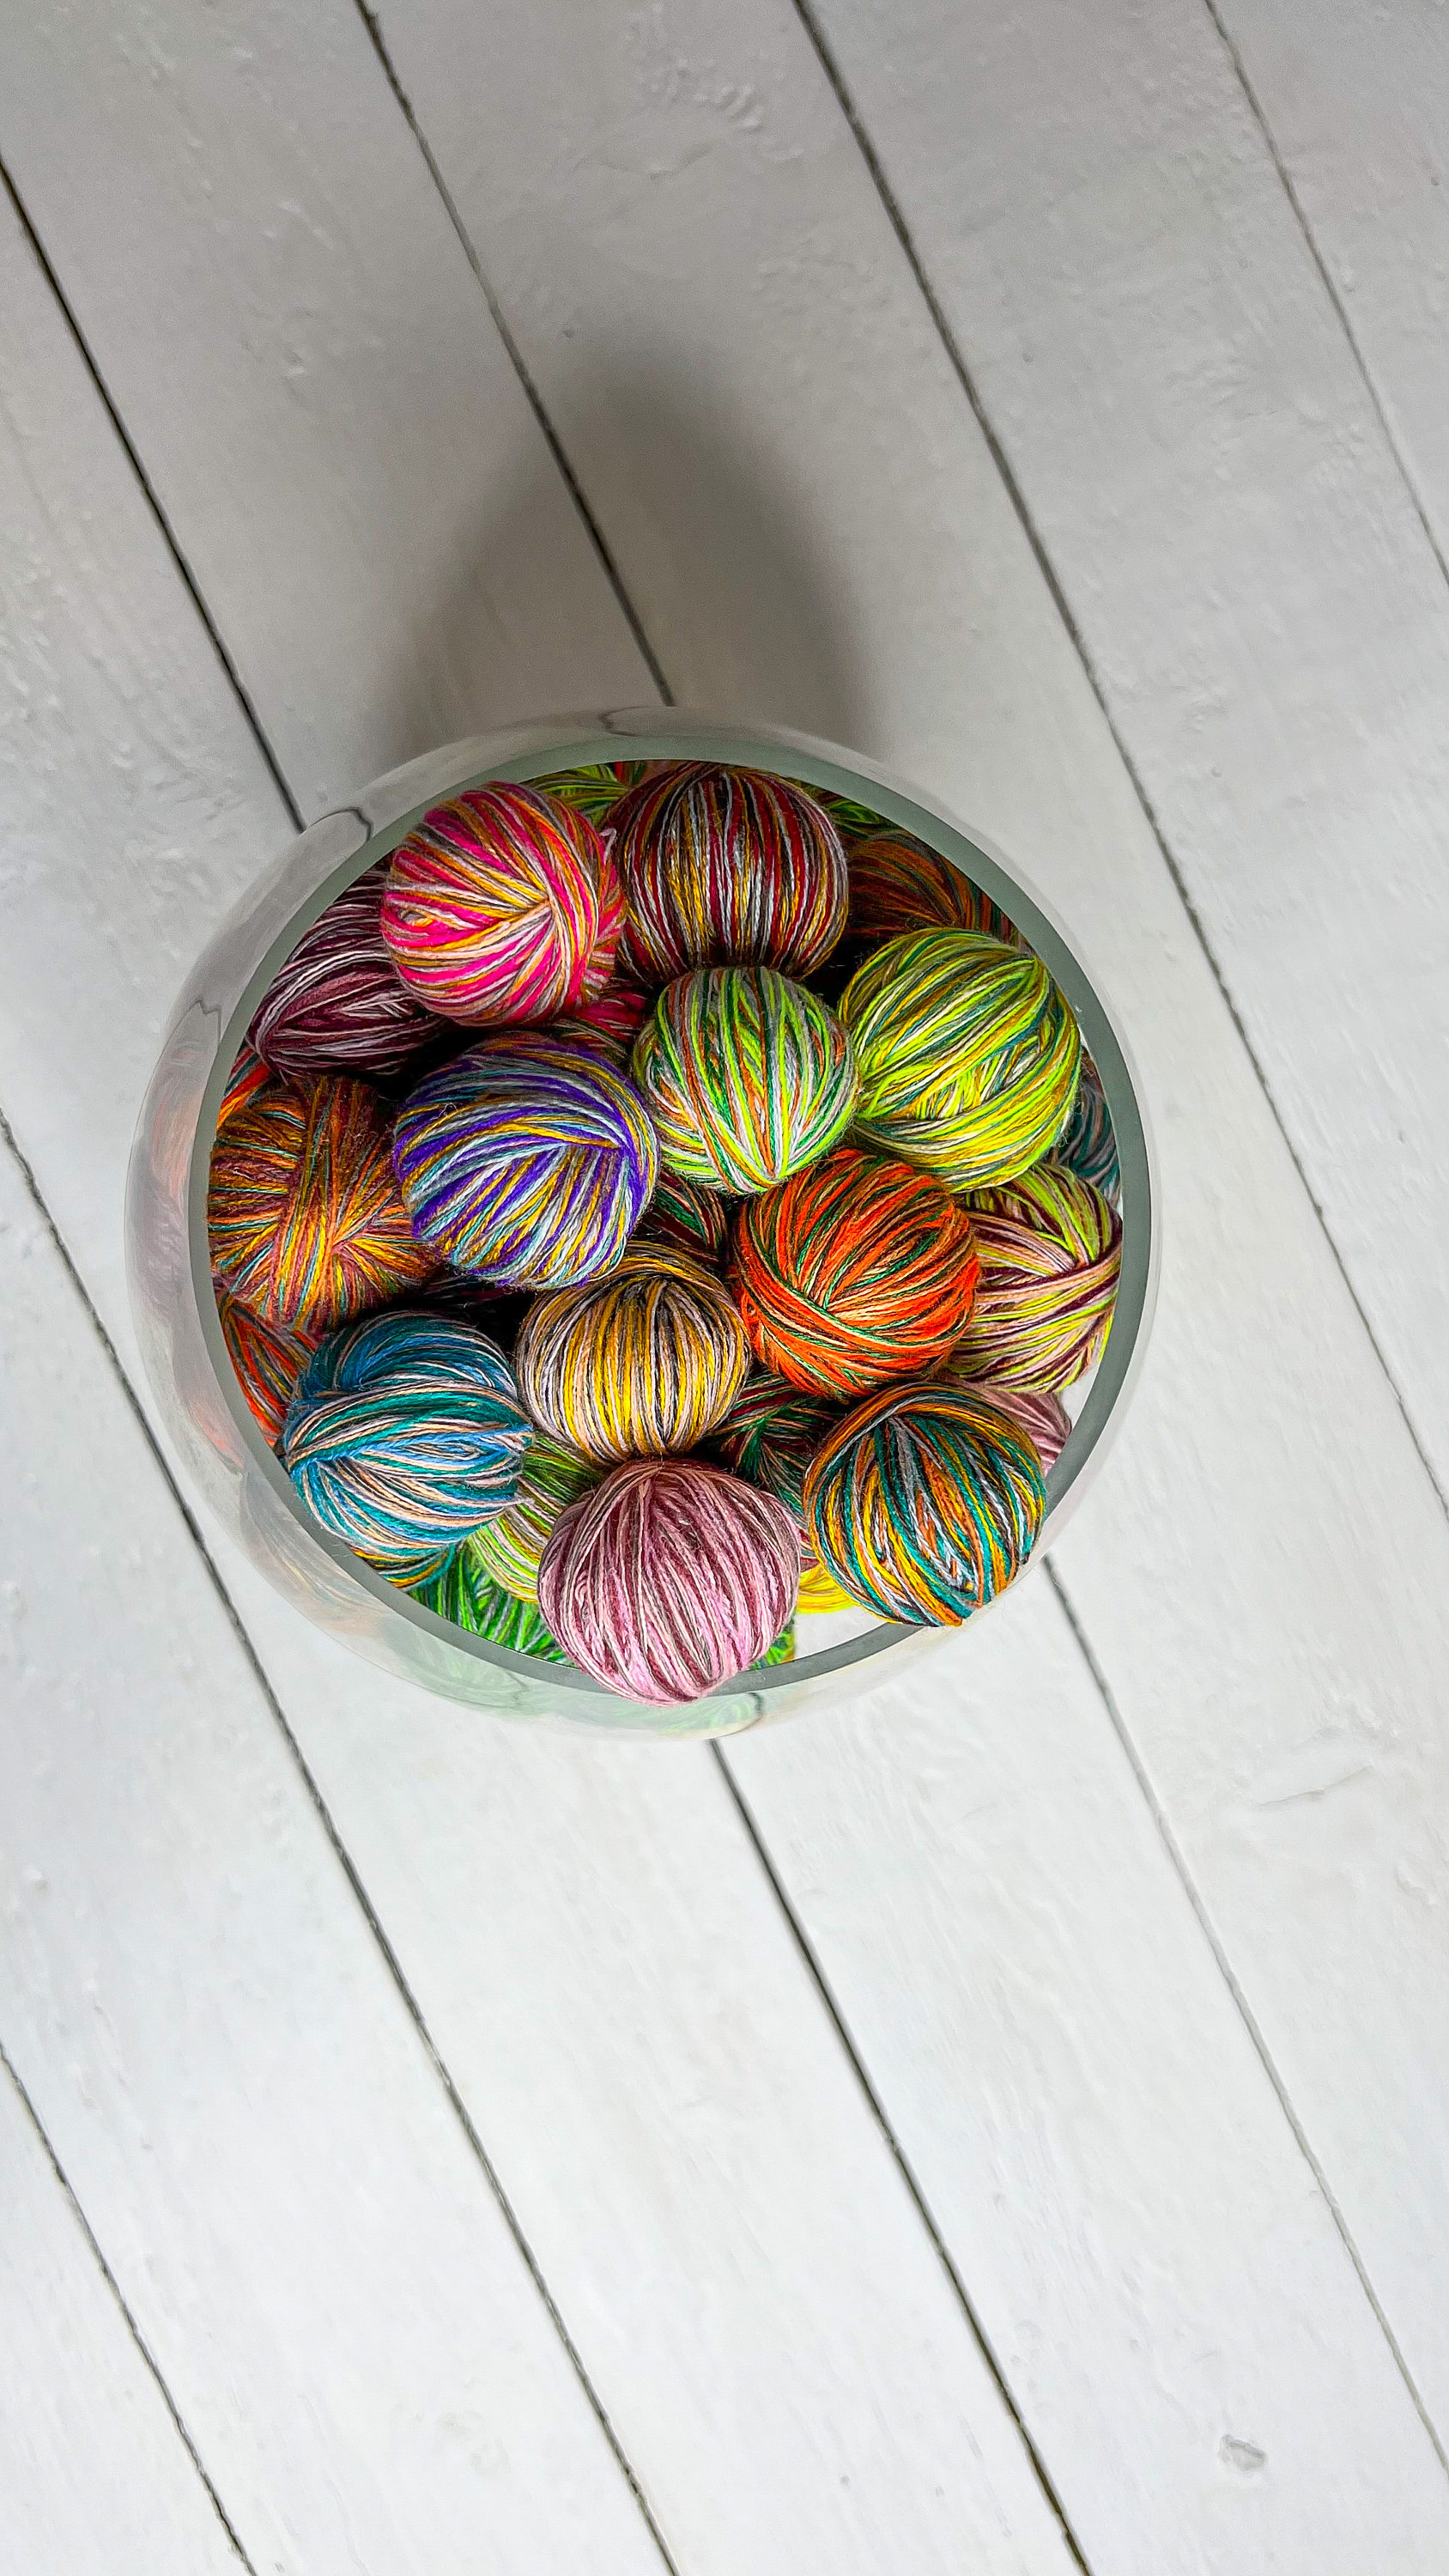 YARN BOX, 800 Grams of Mini Yarn Balls, Handmade Yarn, Multicolor Yarn for  Crafts, Fancy Novelty Yarn, Special Technique Scrap Yarn © 